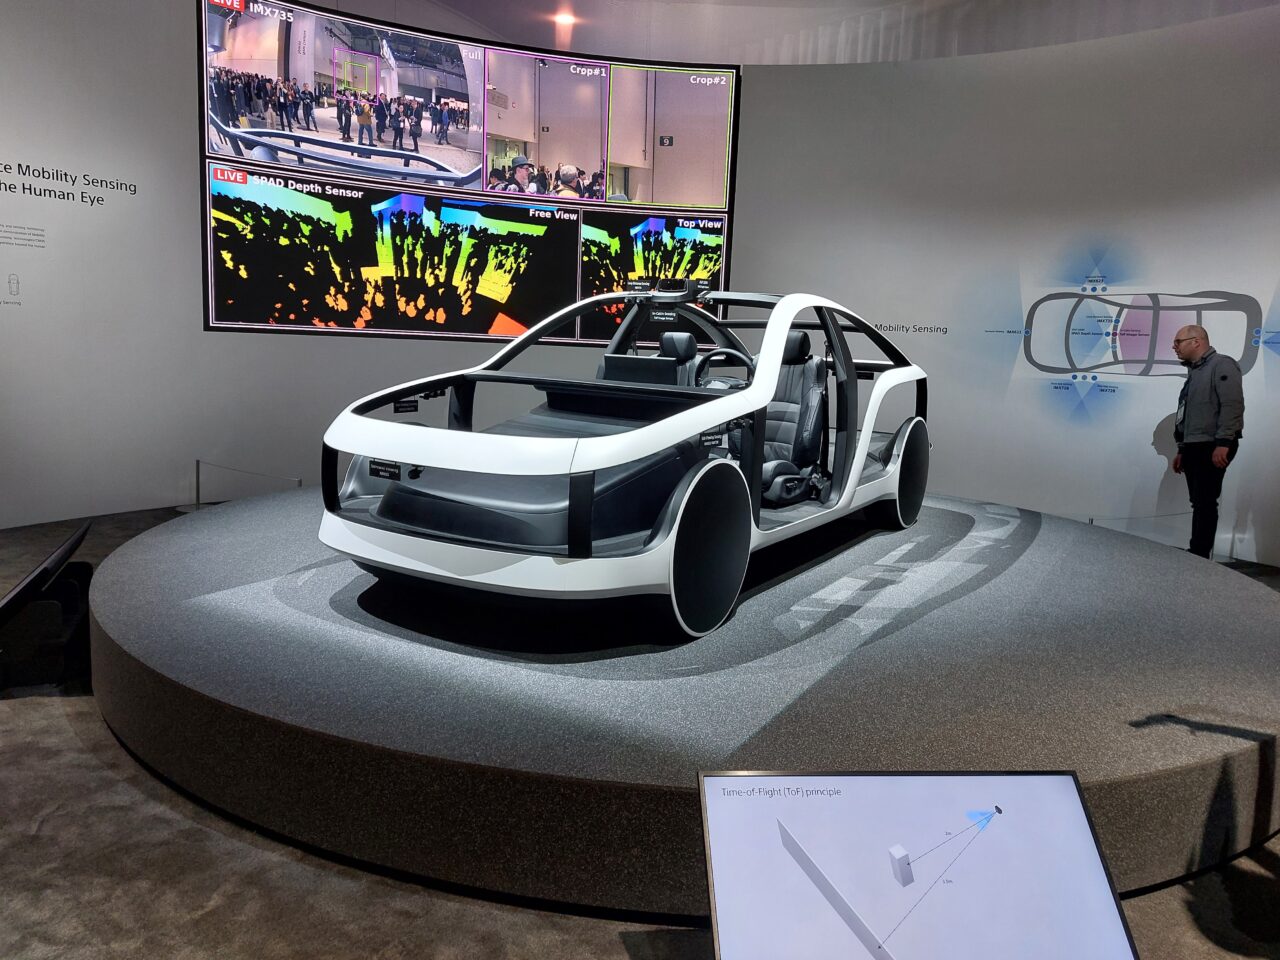 Koncepcyjny elektryczny pojazd na okrągłym podium z otwartymi drzwiami eksponowany podczas targów technologicznych, z mężczyzną stojącym z boku i ekranami wyświetlającymi prezentacje technologiczne w tle.